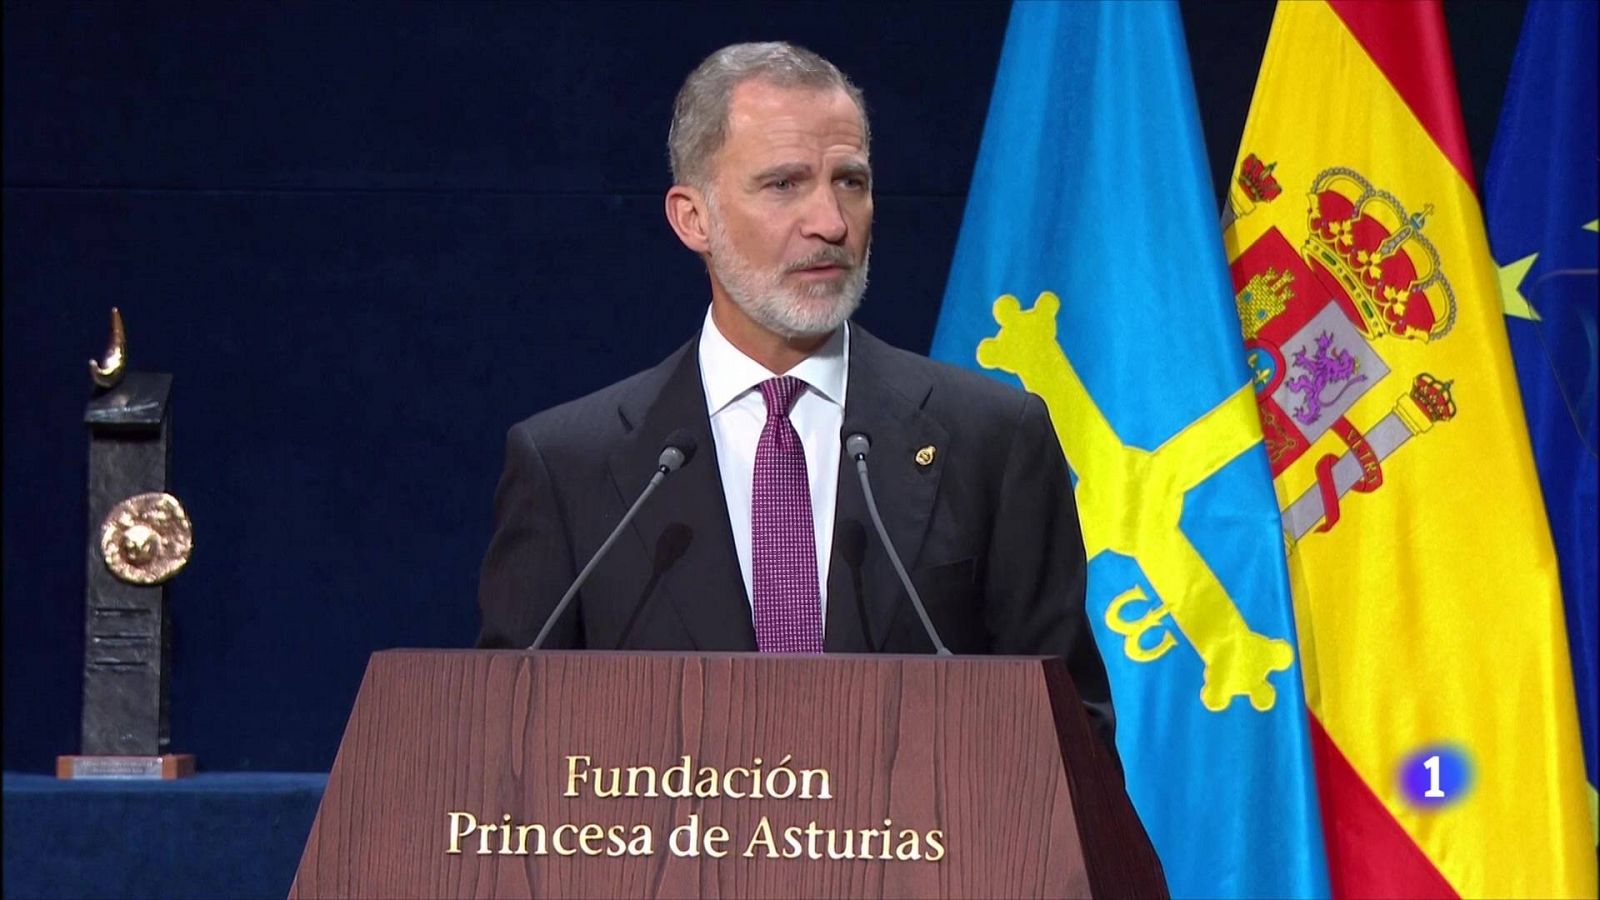 El rey, en la entrega de los Premios Princesa de Asturias: "Las soluciones llegarn de la unidad, nunca de la divisin"